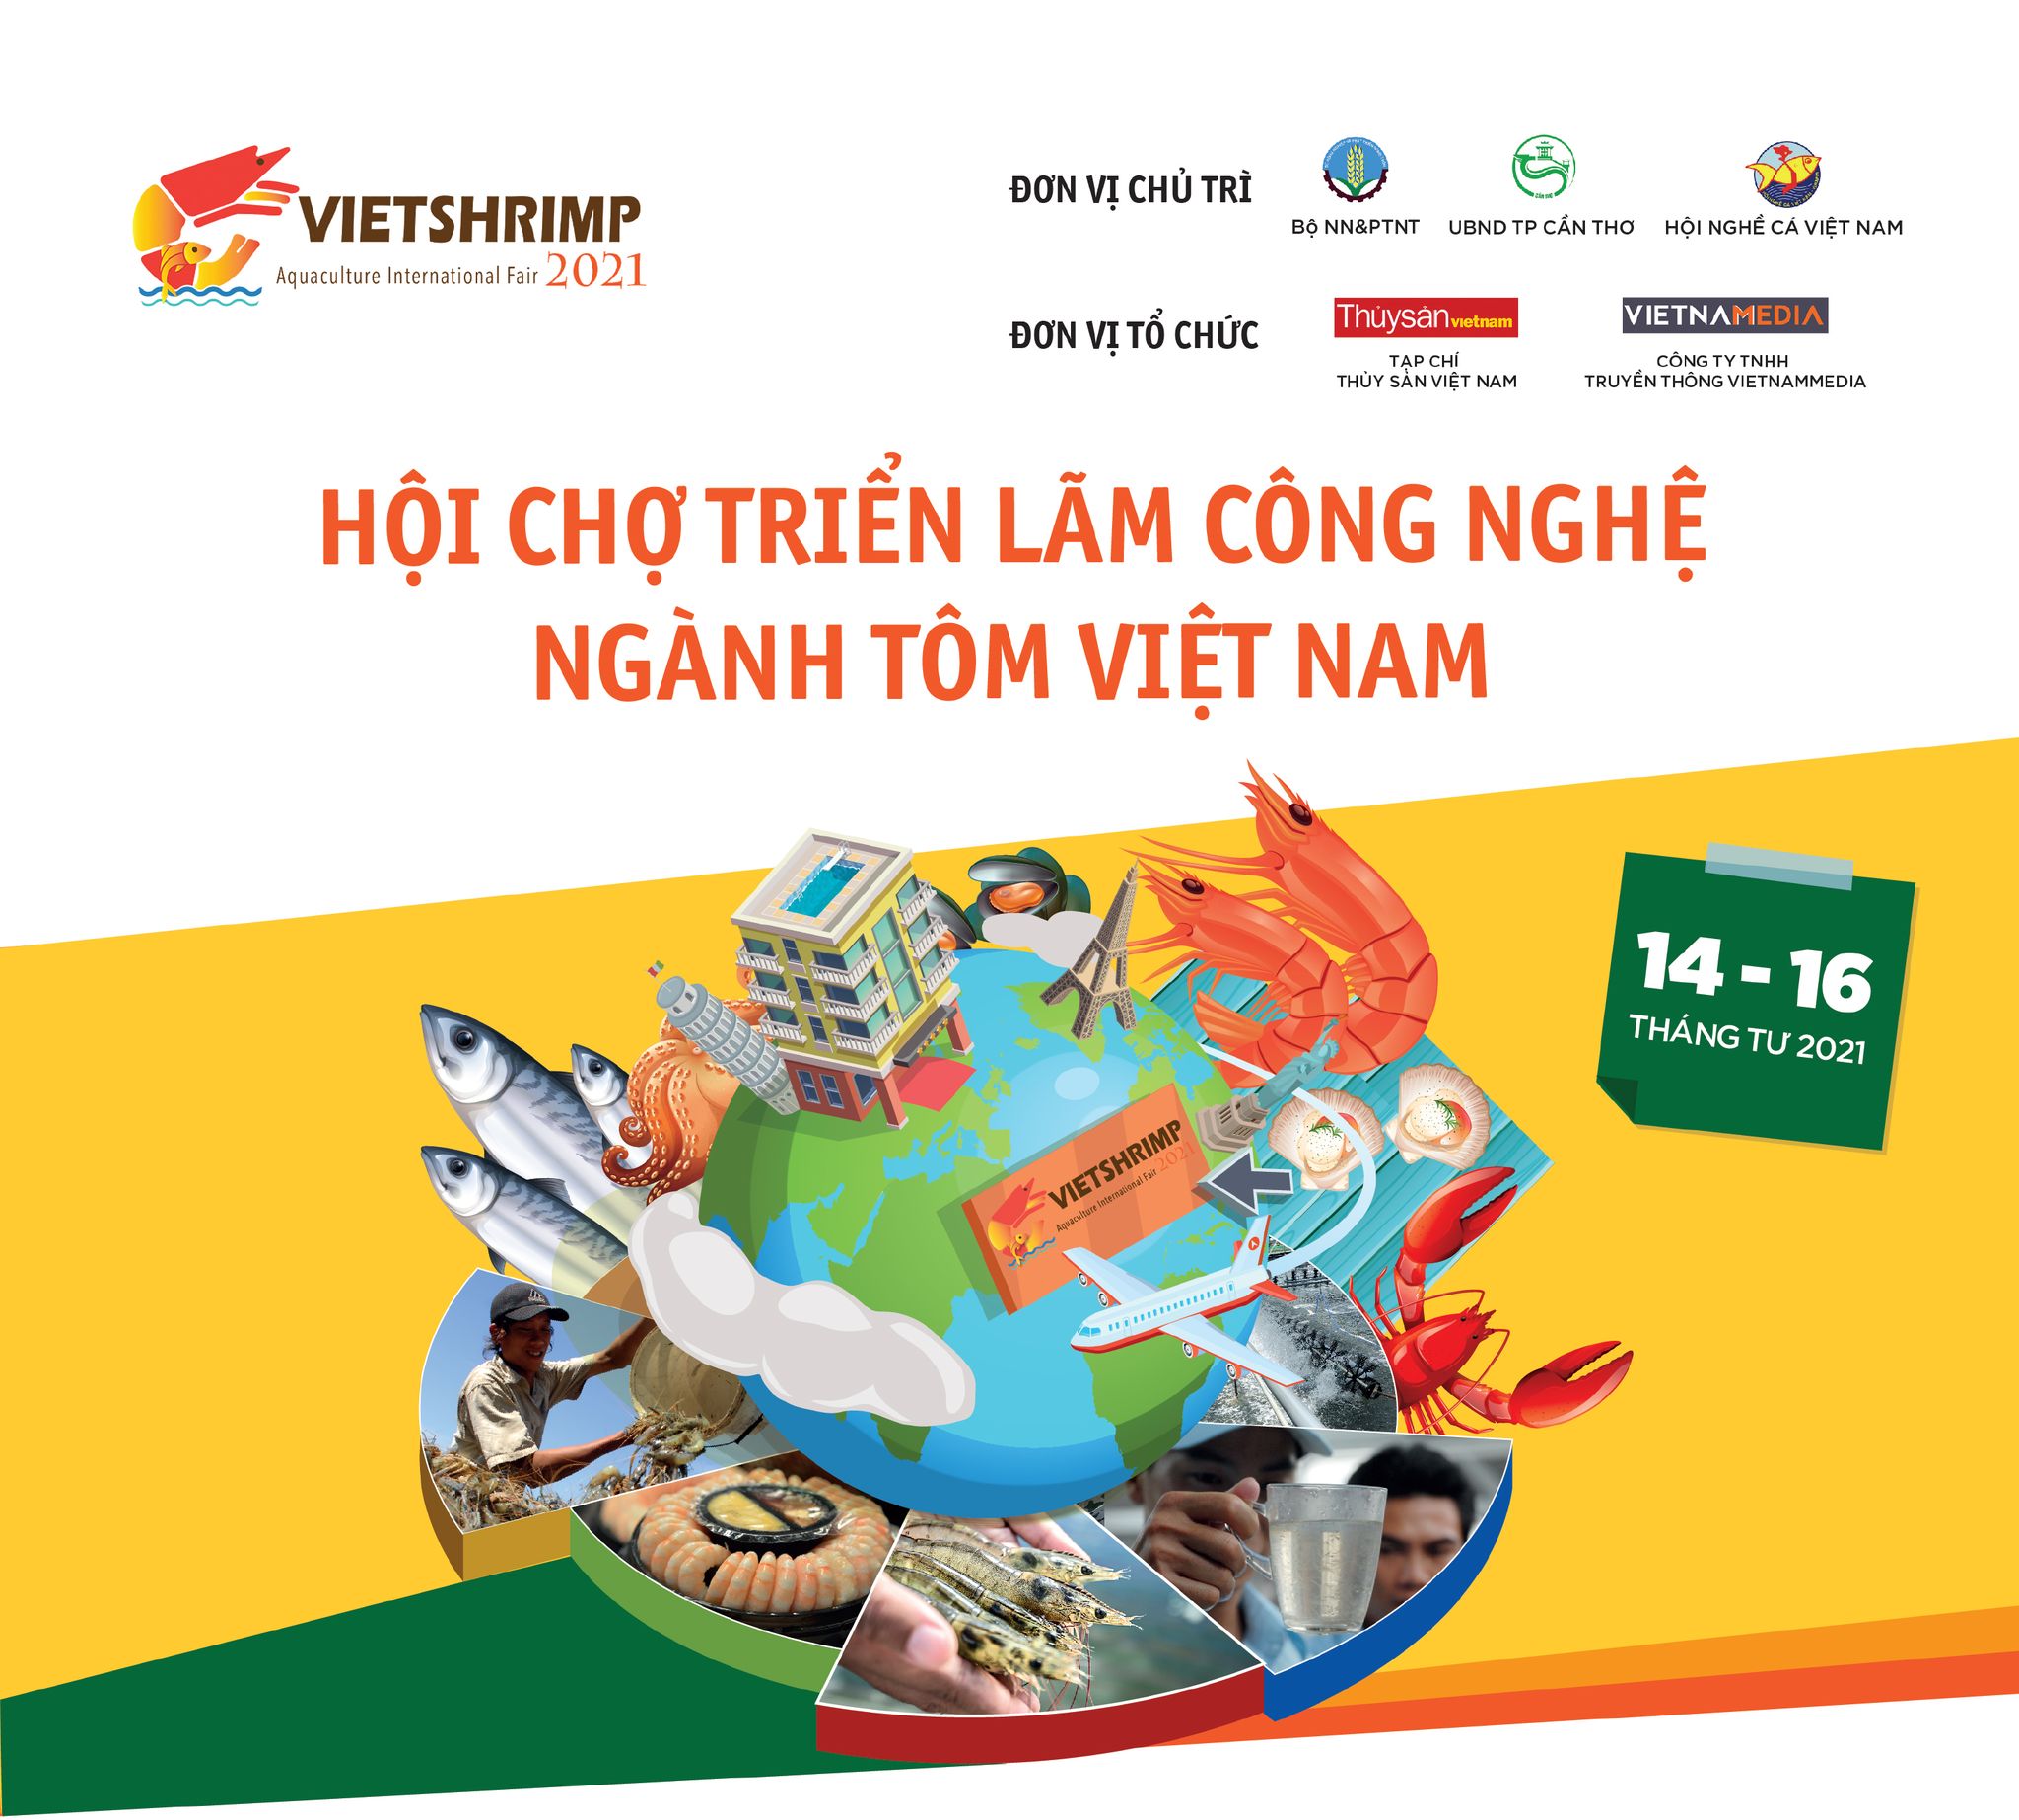 Chuẩn bị diễn ra Triển lãm Công nghệ ngành tôm Việt Nam năm 2021 - VietShrimp 2021